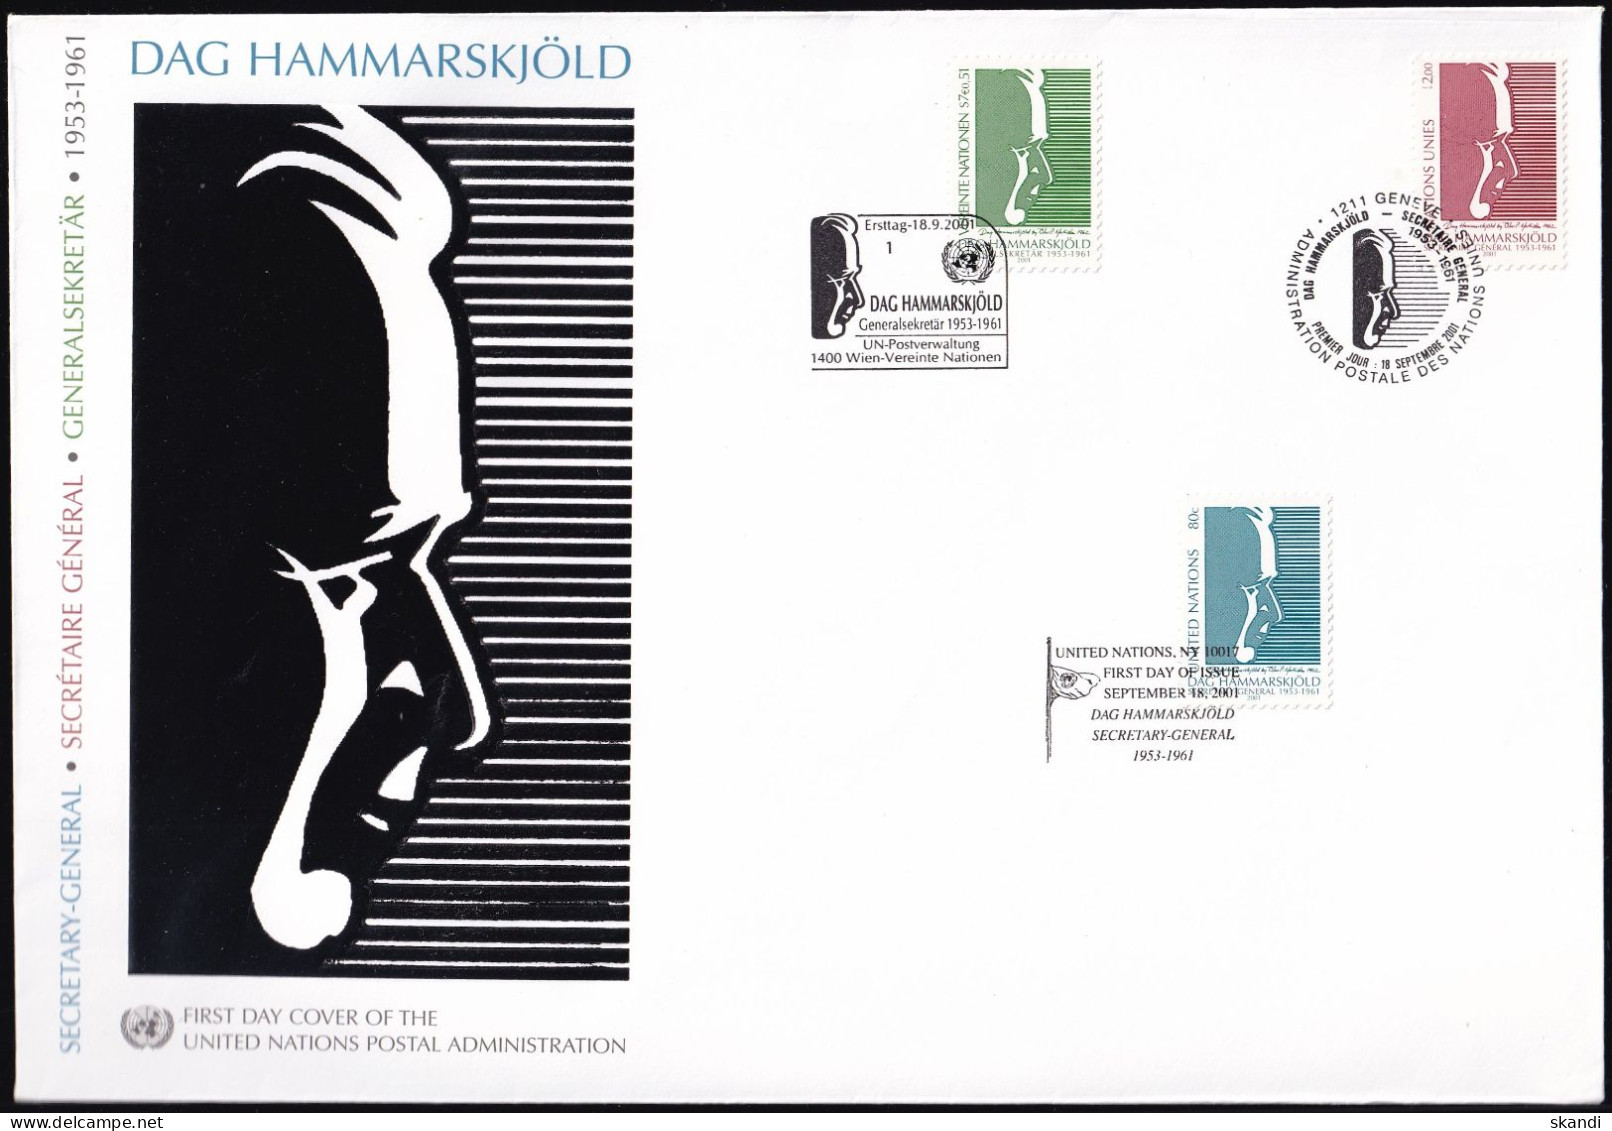 UNO NEW YORK - WIEN - GENF 2001 TRIO-FDC Dag Hammarskjöld - New York/Geneva/Vienna Joint Issues